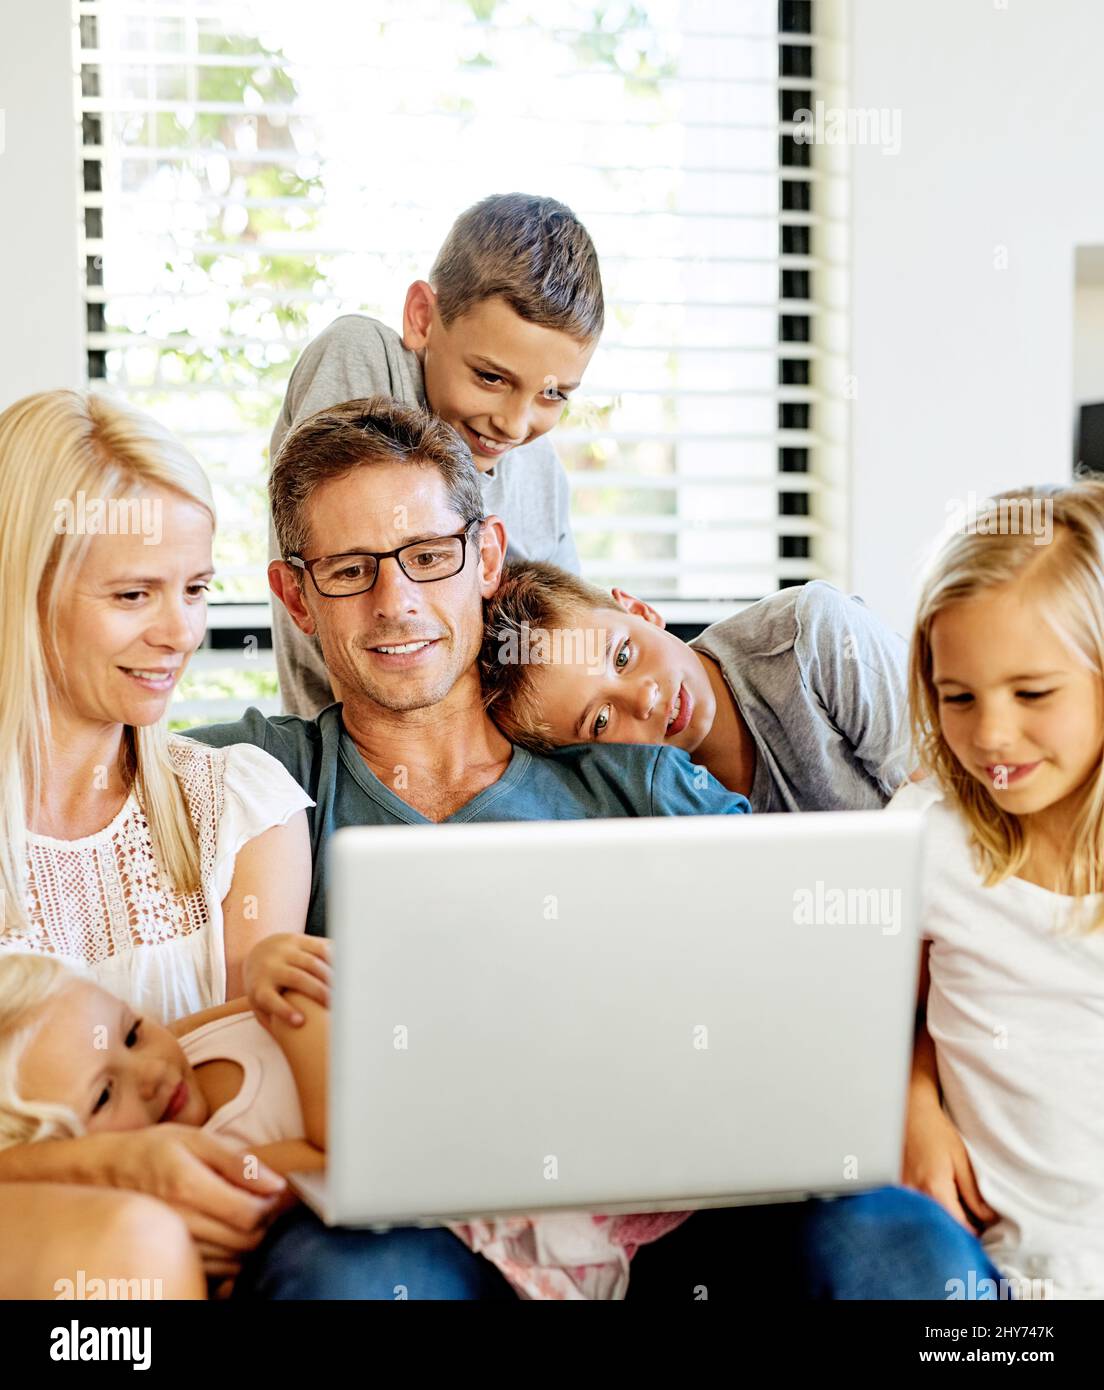 Ihre Kinder in die Online-Welt einführen. Aufnahme einer Familie, die zu Hause einen Laptop benutzt. Stockfoto